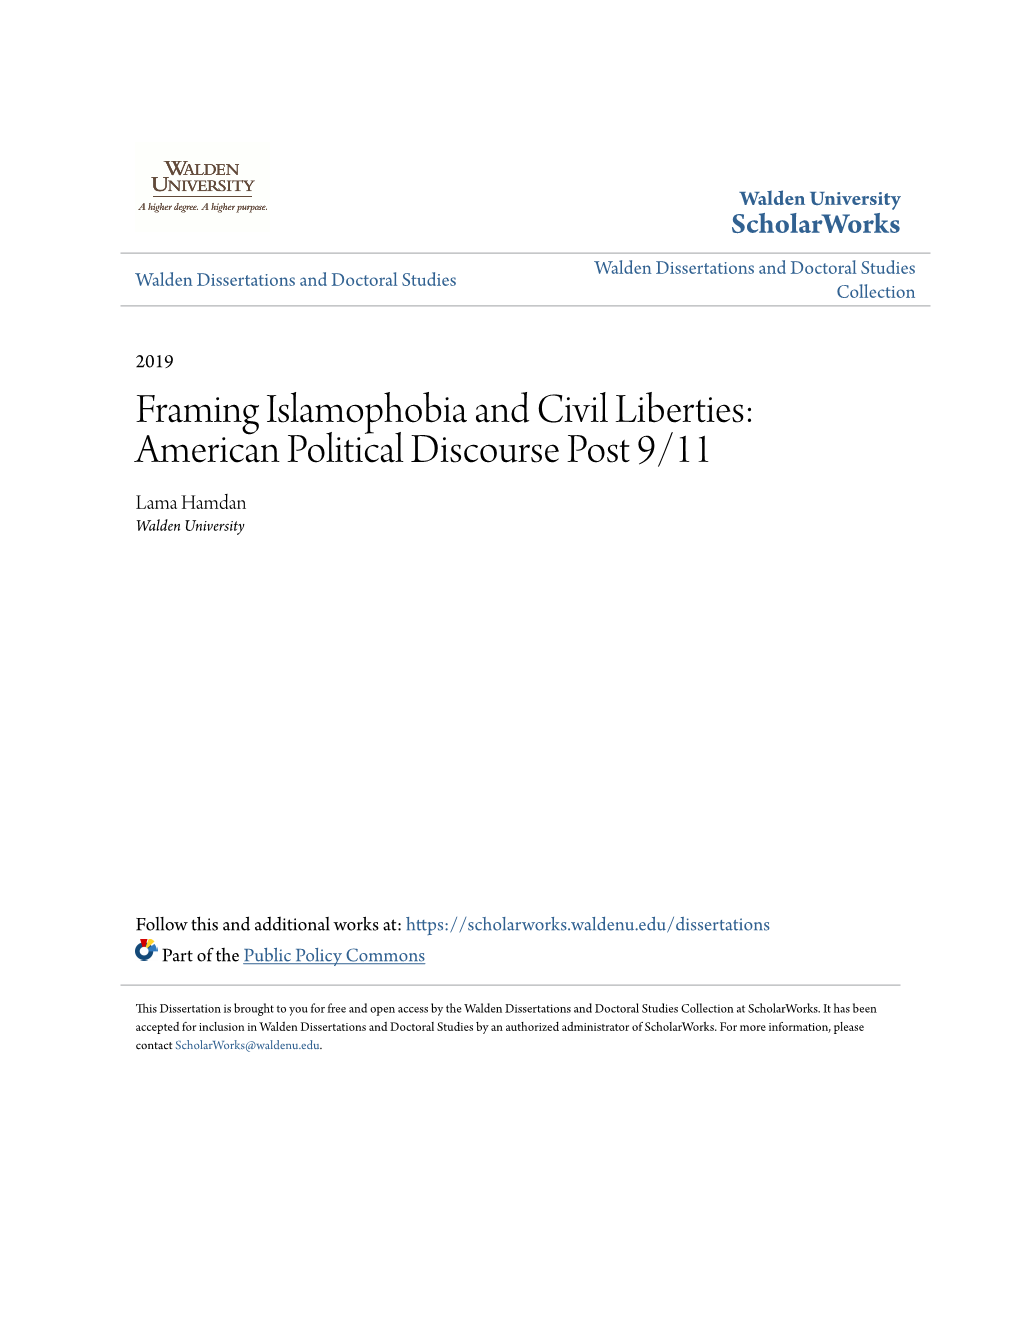 Framing Islamophobia and Civil Liberties: American Political Discourse Post 9/11 Lama Hamdan Walden University